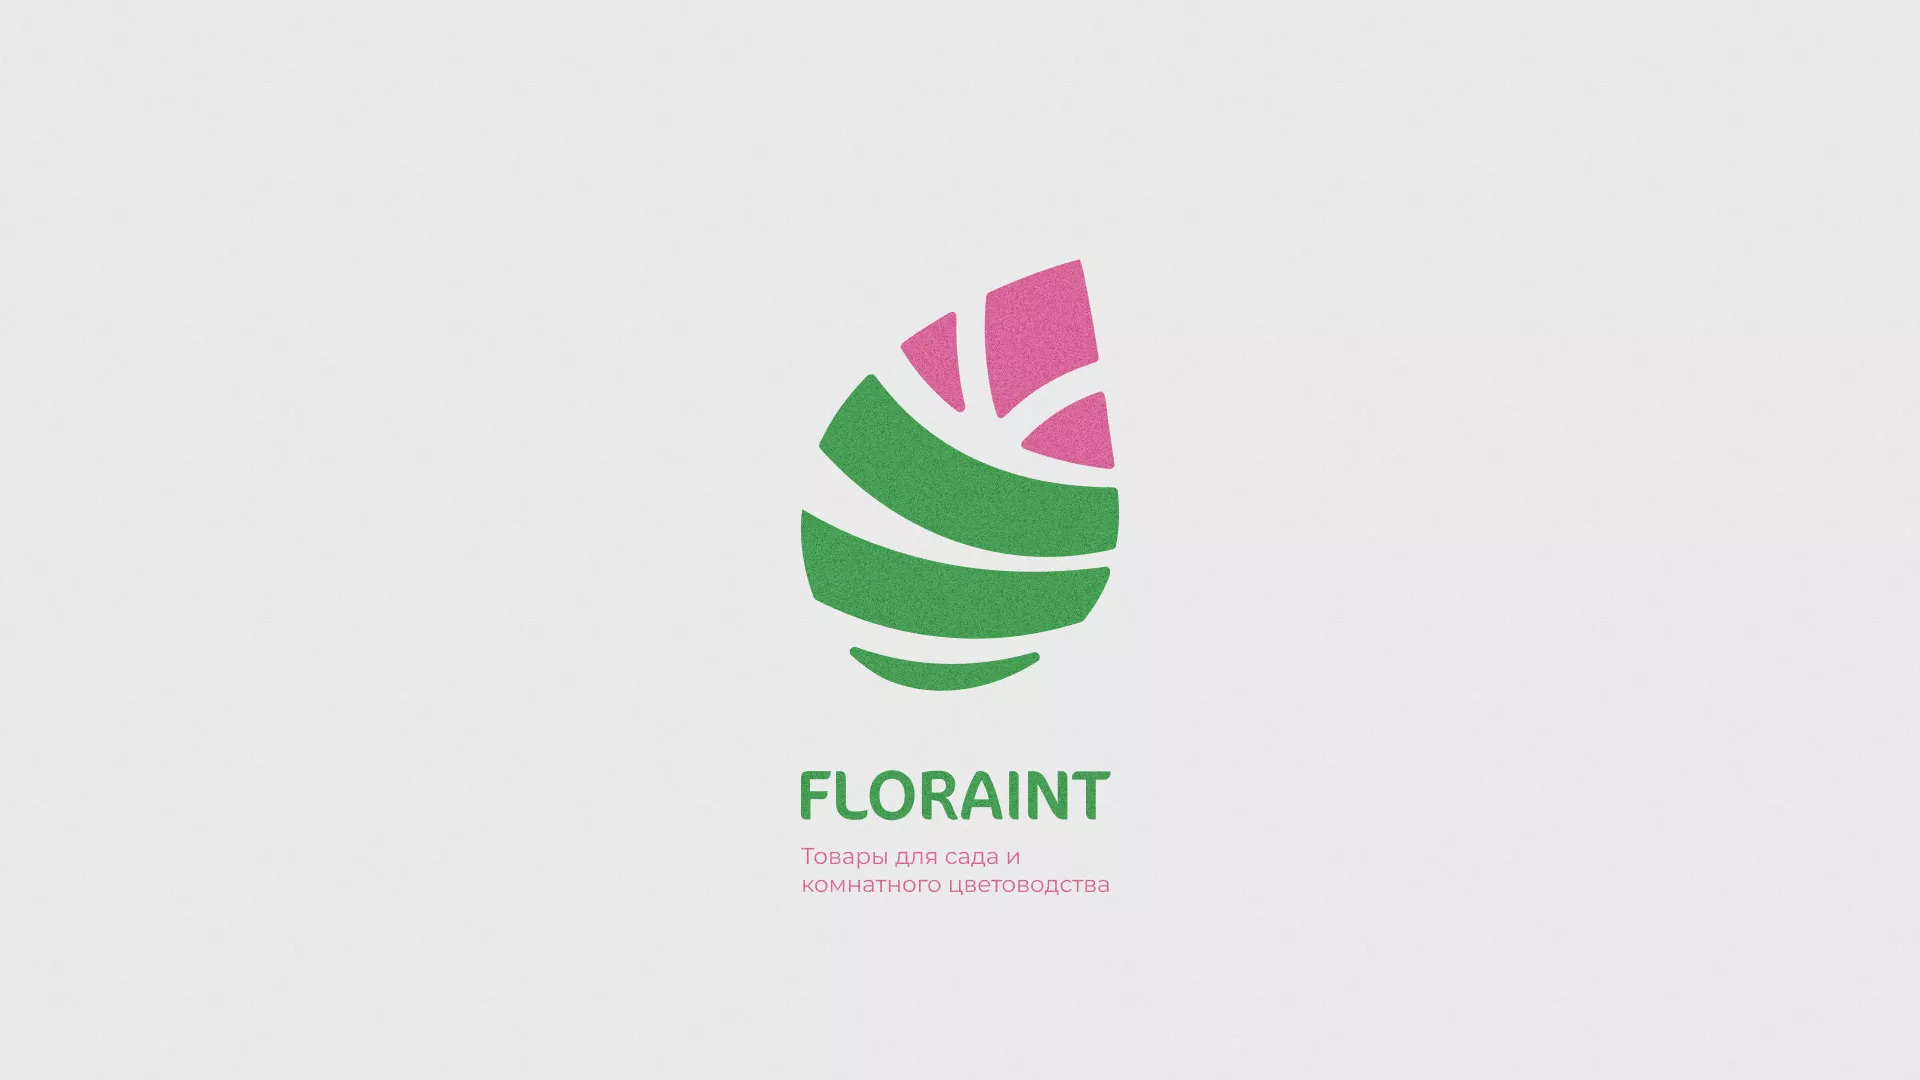 Разработка оформления профиля Instagram для магазина «Floraint» в Вятских Полянах